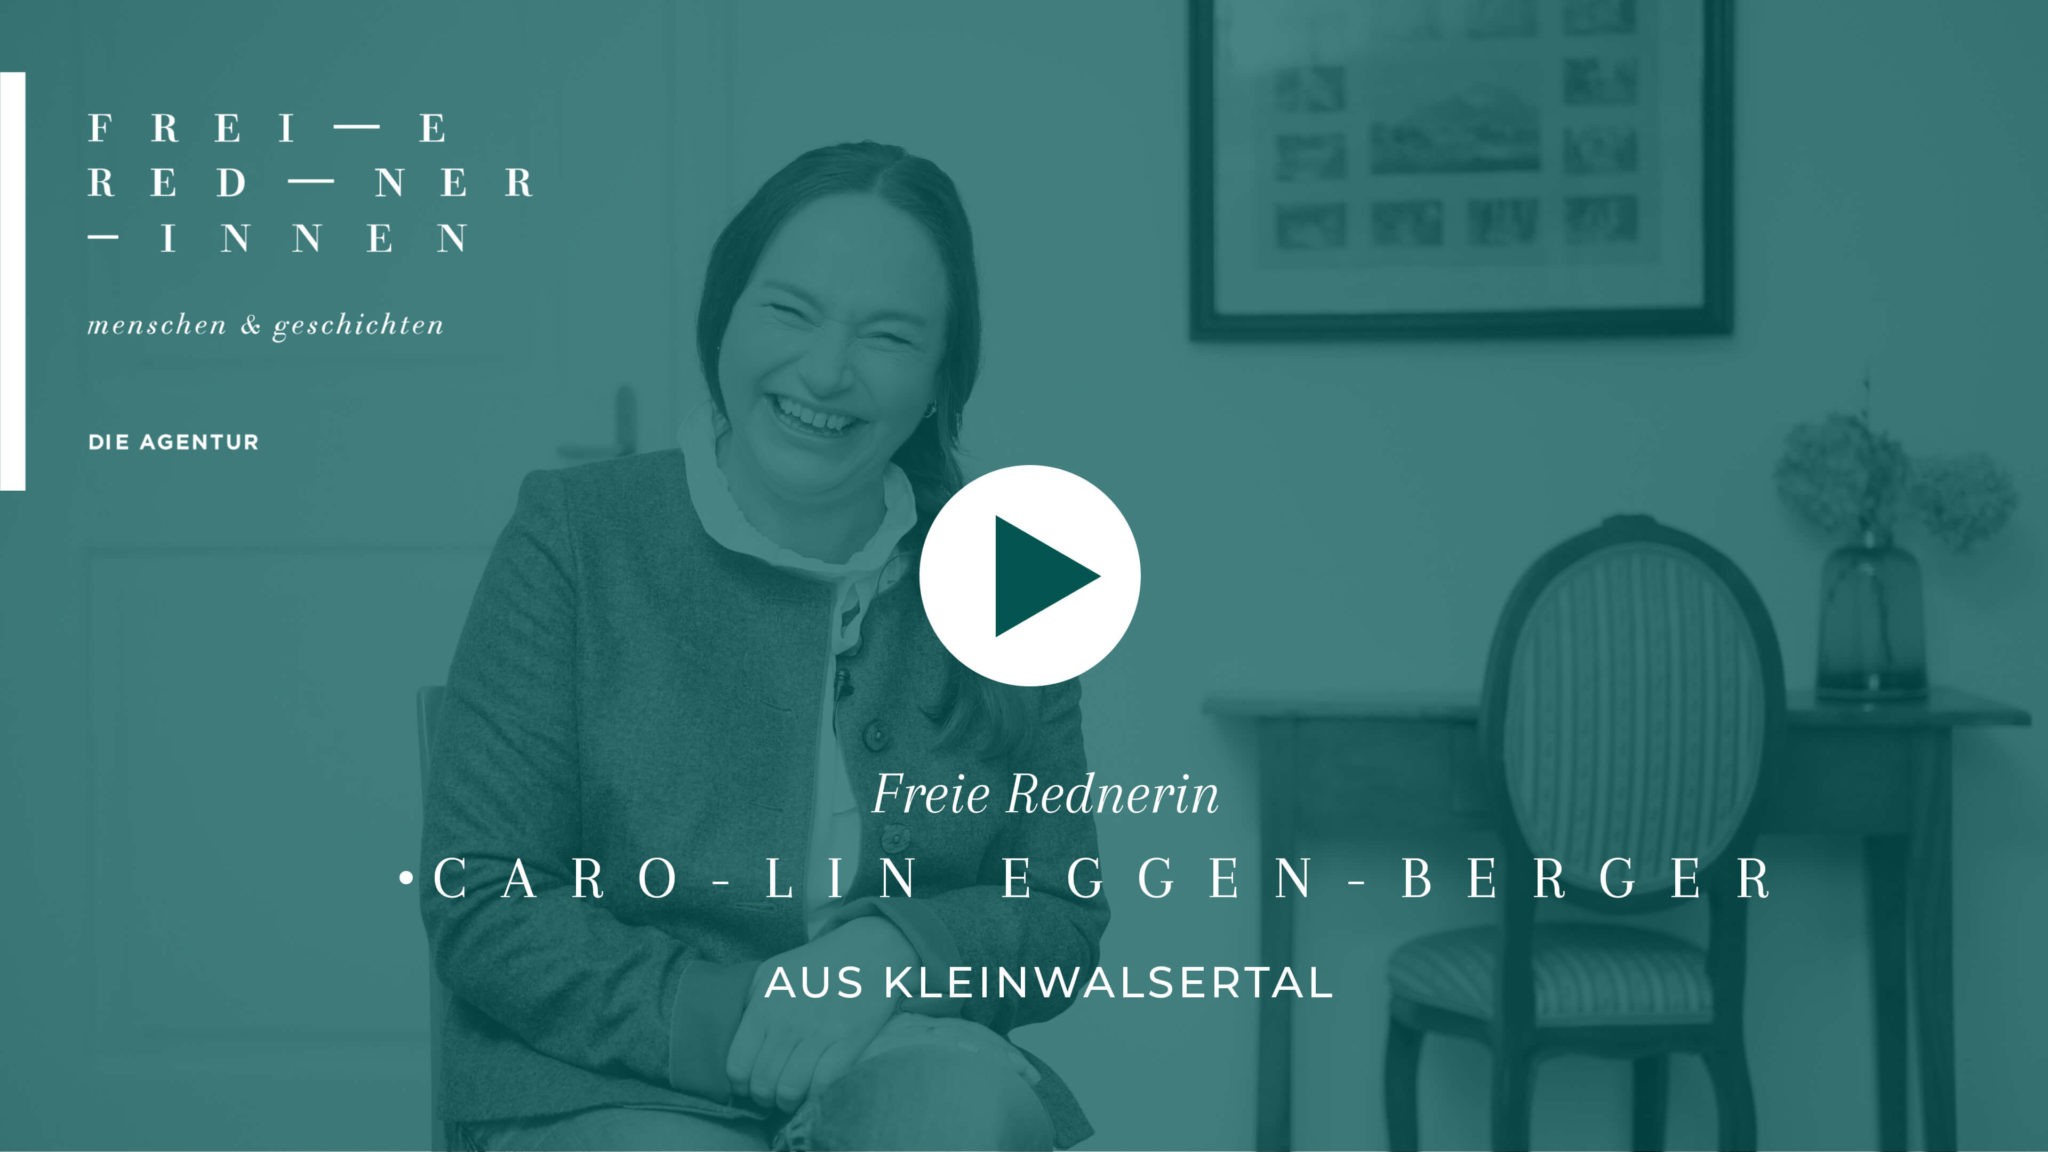 Freie Rednerin Carolin Eggenberger aus Kleinwalsertal